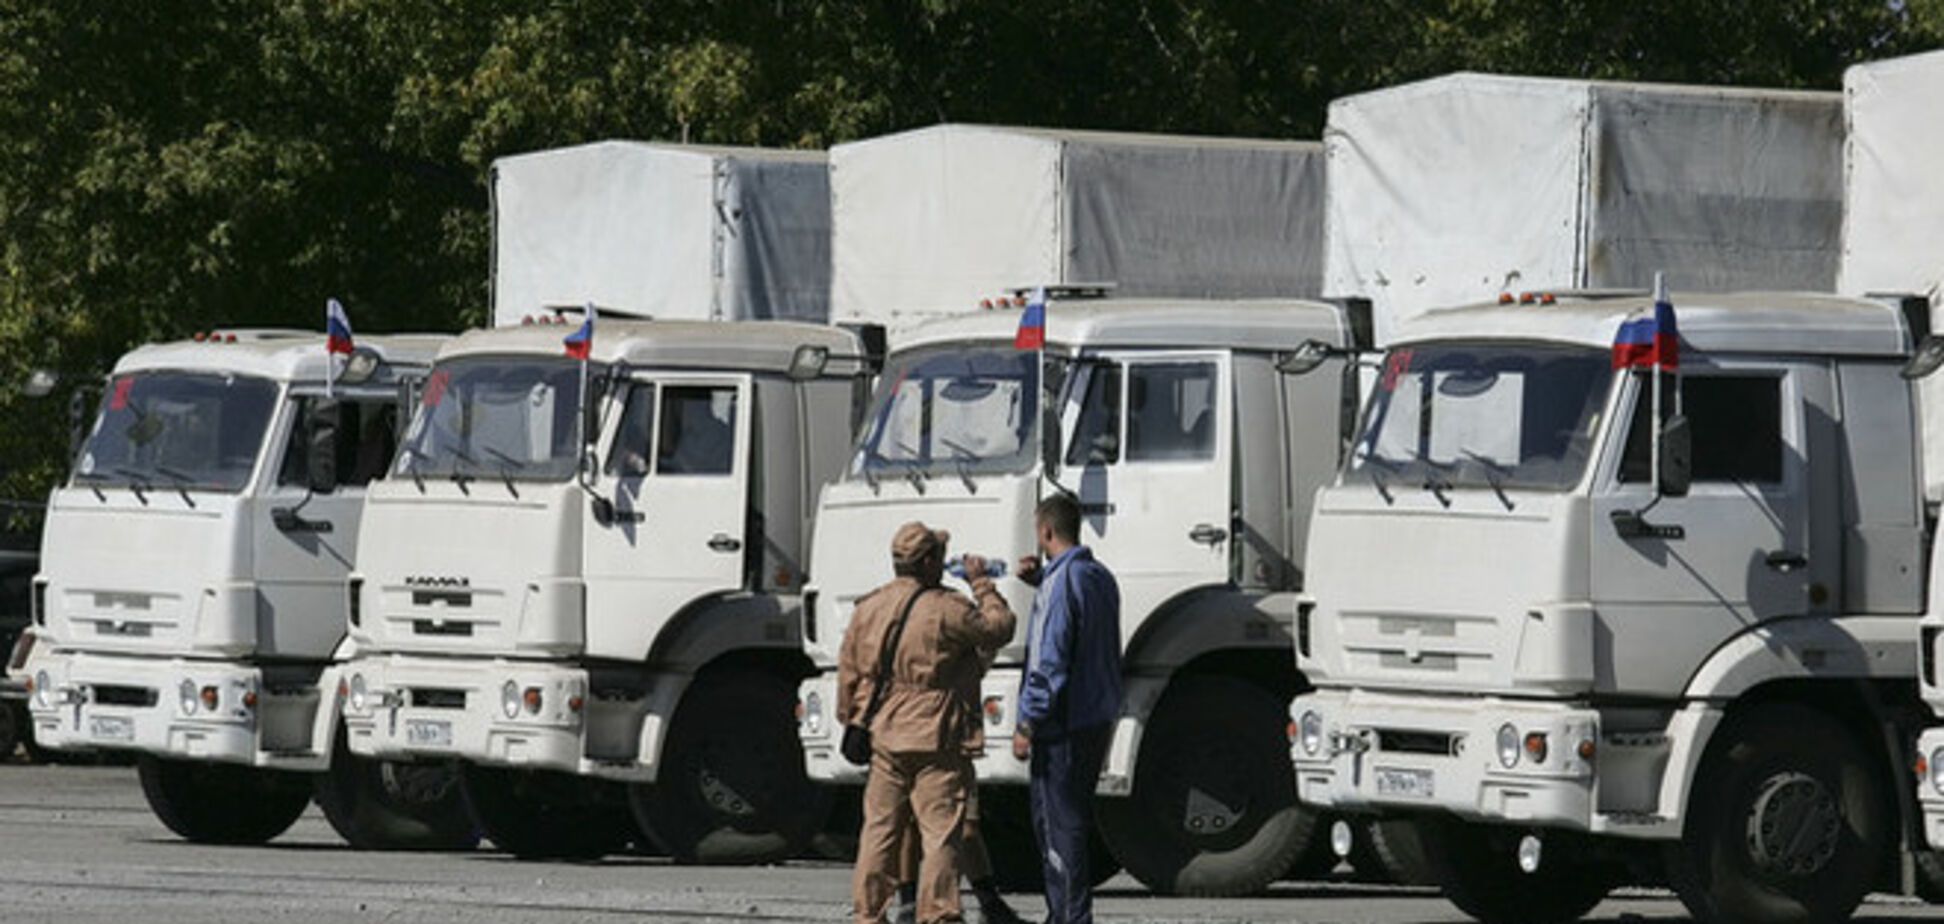 Російський 'гумконвой' привіз до Луганська снаряди і верстати для друку гривні - активіст